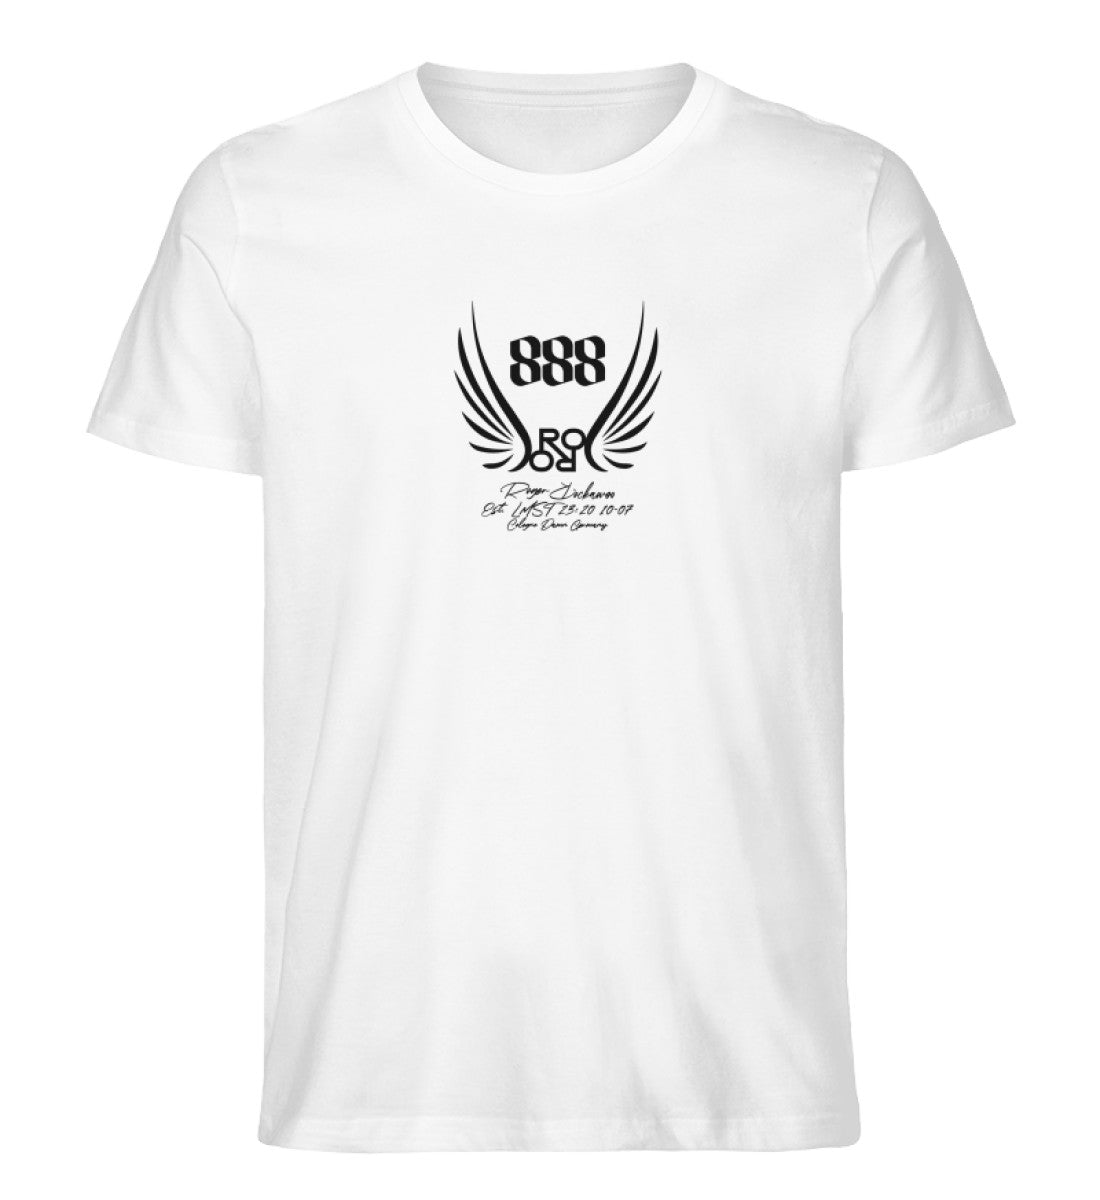 Weißes T-Shirt Unisex für Damen und Herren bedruckt in schwarz mit der Engelszahl 888 und symboloschen Engelsfluegeln und dem Logo von Roger Rockawoo Clothing